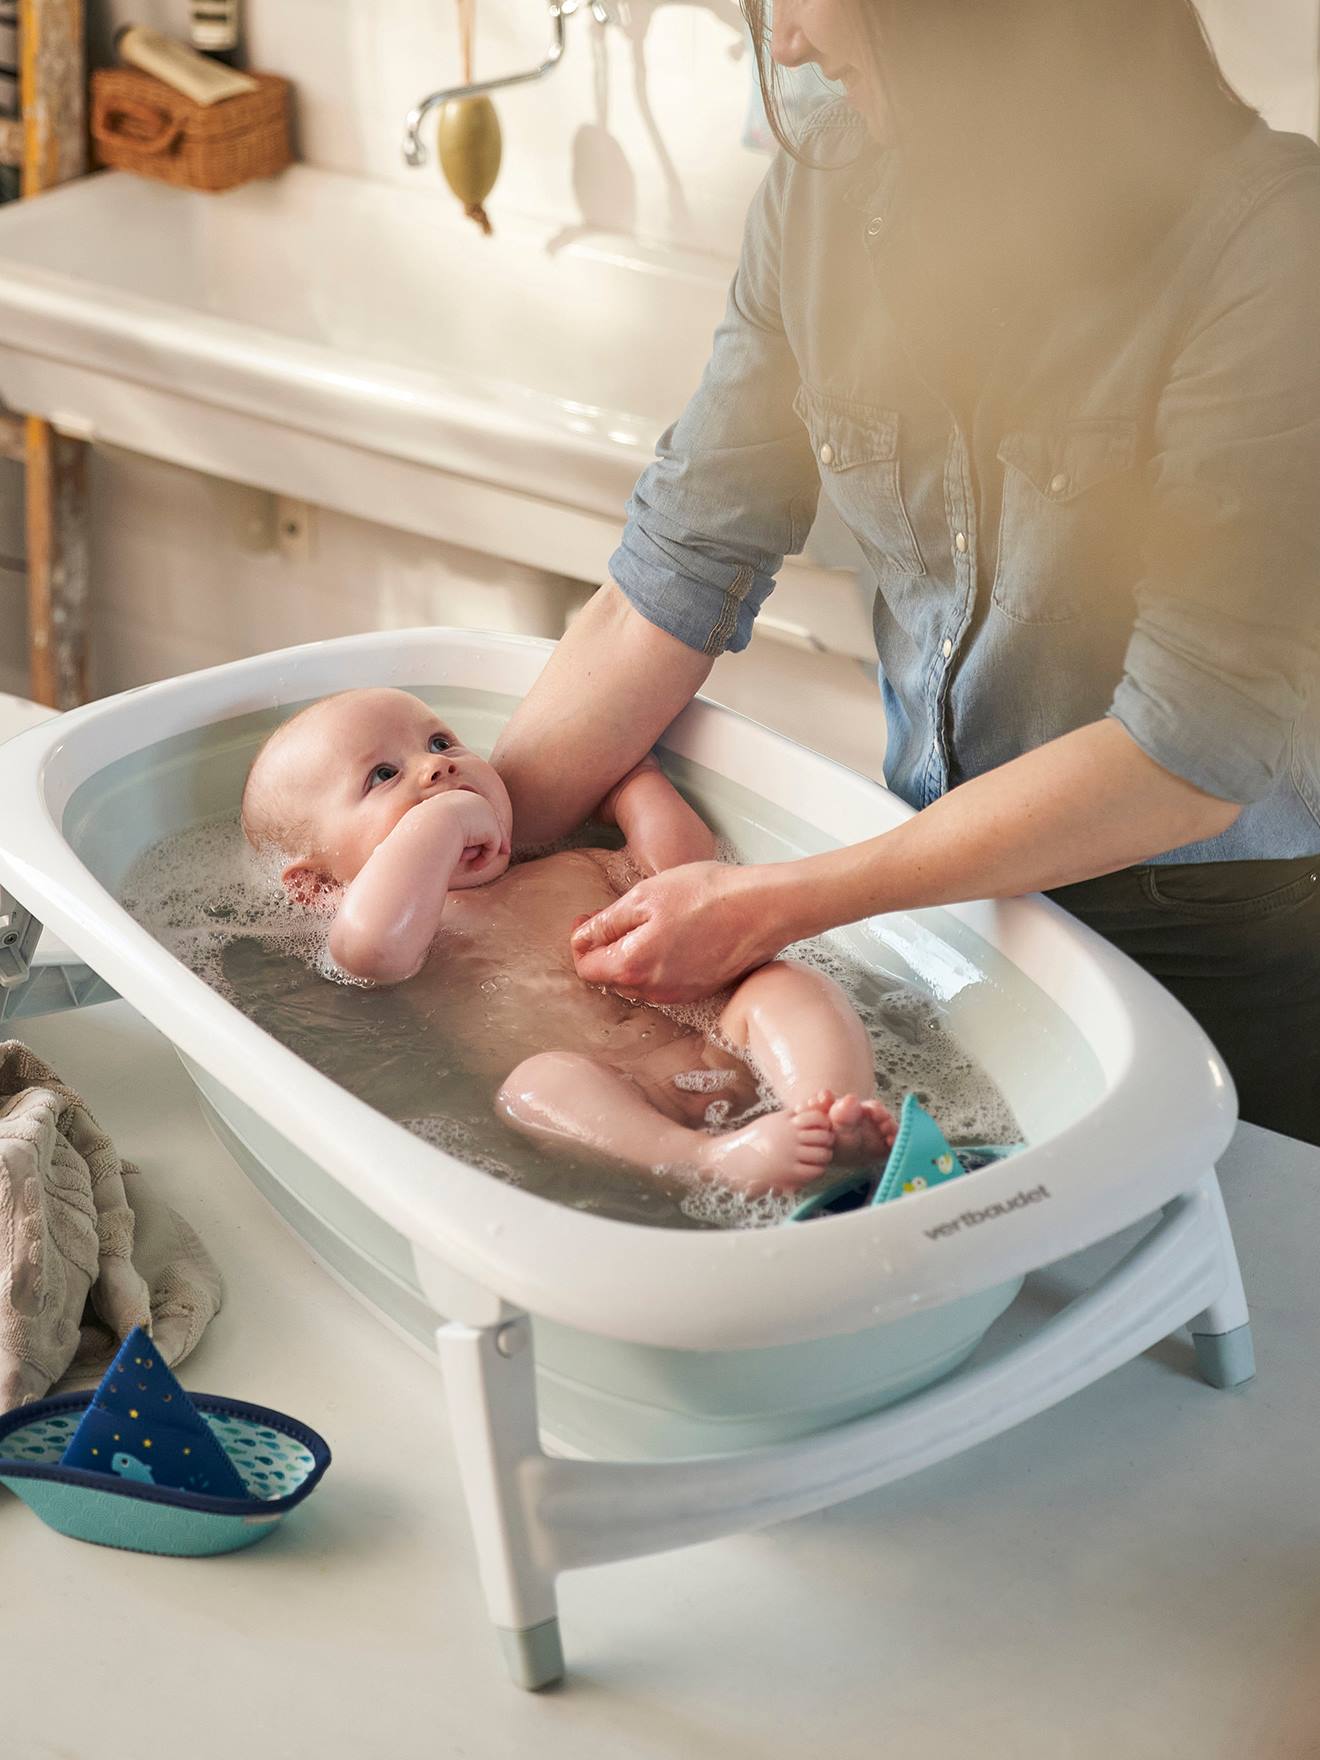 pour douche portable pour bébé bleu pliable portable Bac de bain pour enfants baignoire antidérapante